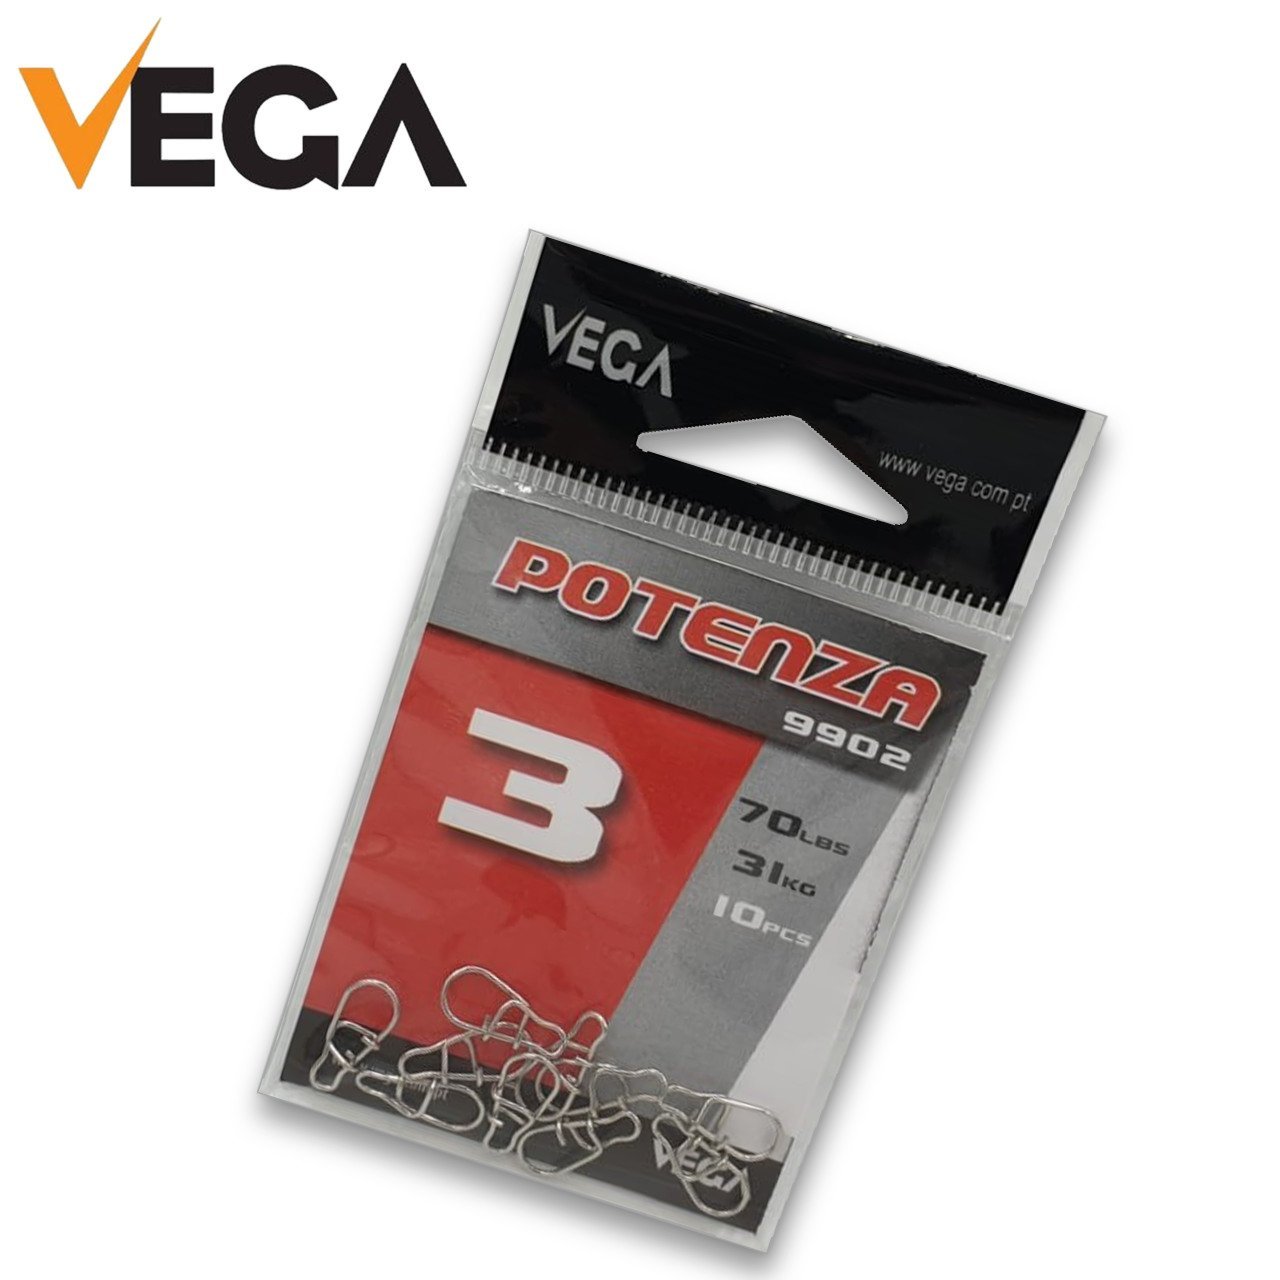 Vega Potenza 9902 Tournament NO:3 (crosslock) snap